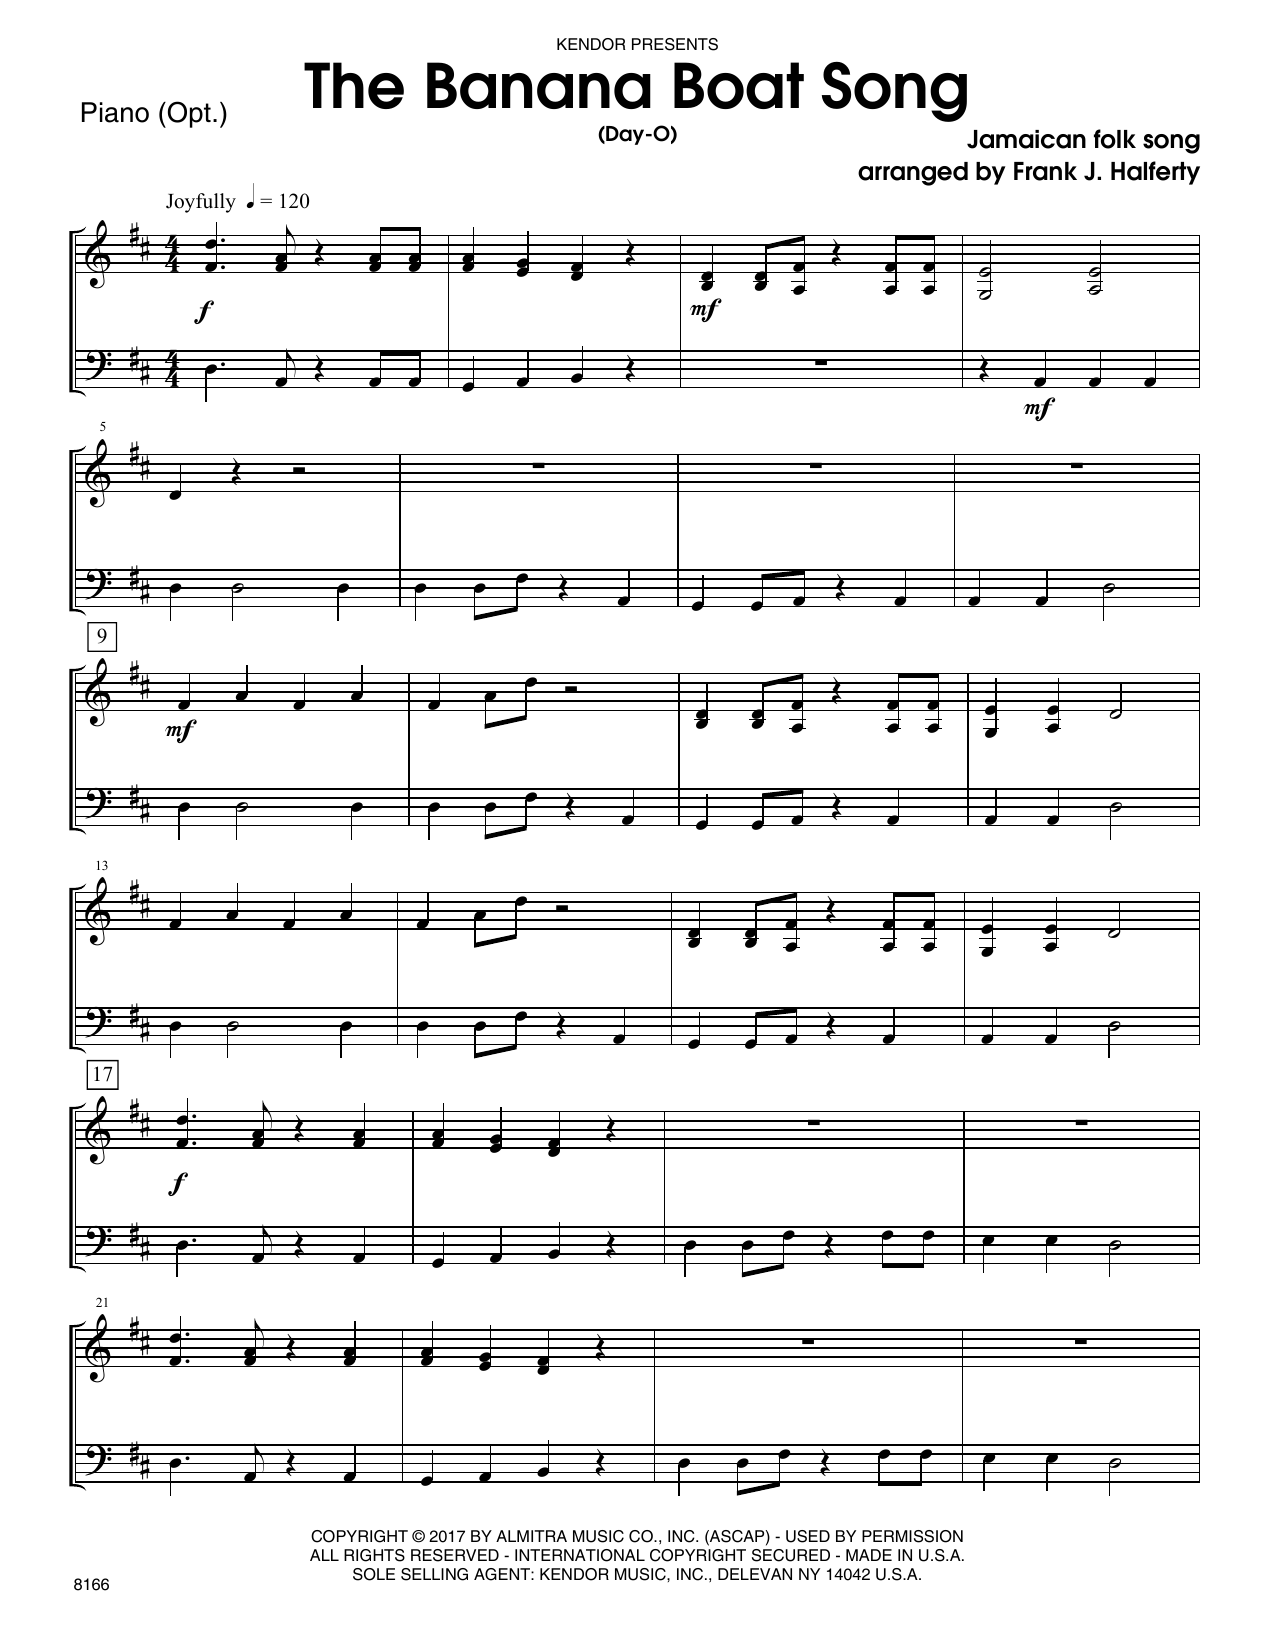 Download Frank J. Halferty Banana Boat Song, The (Day-O) - Piano A Sheet Music